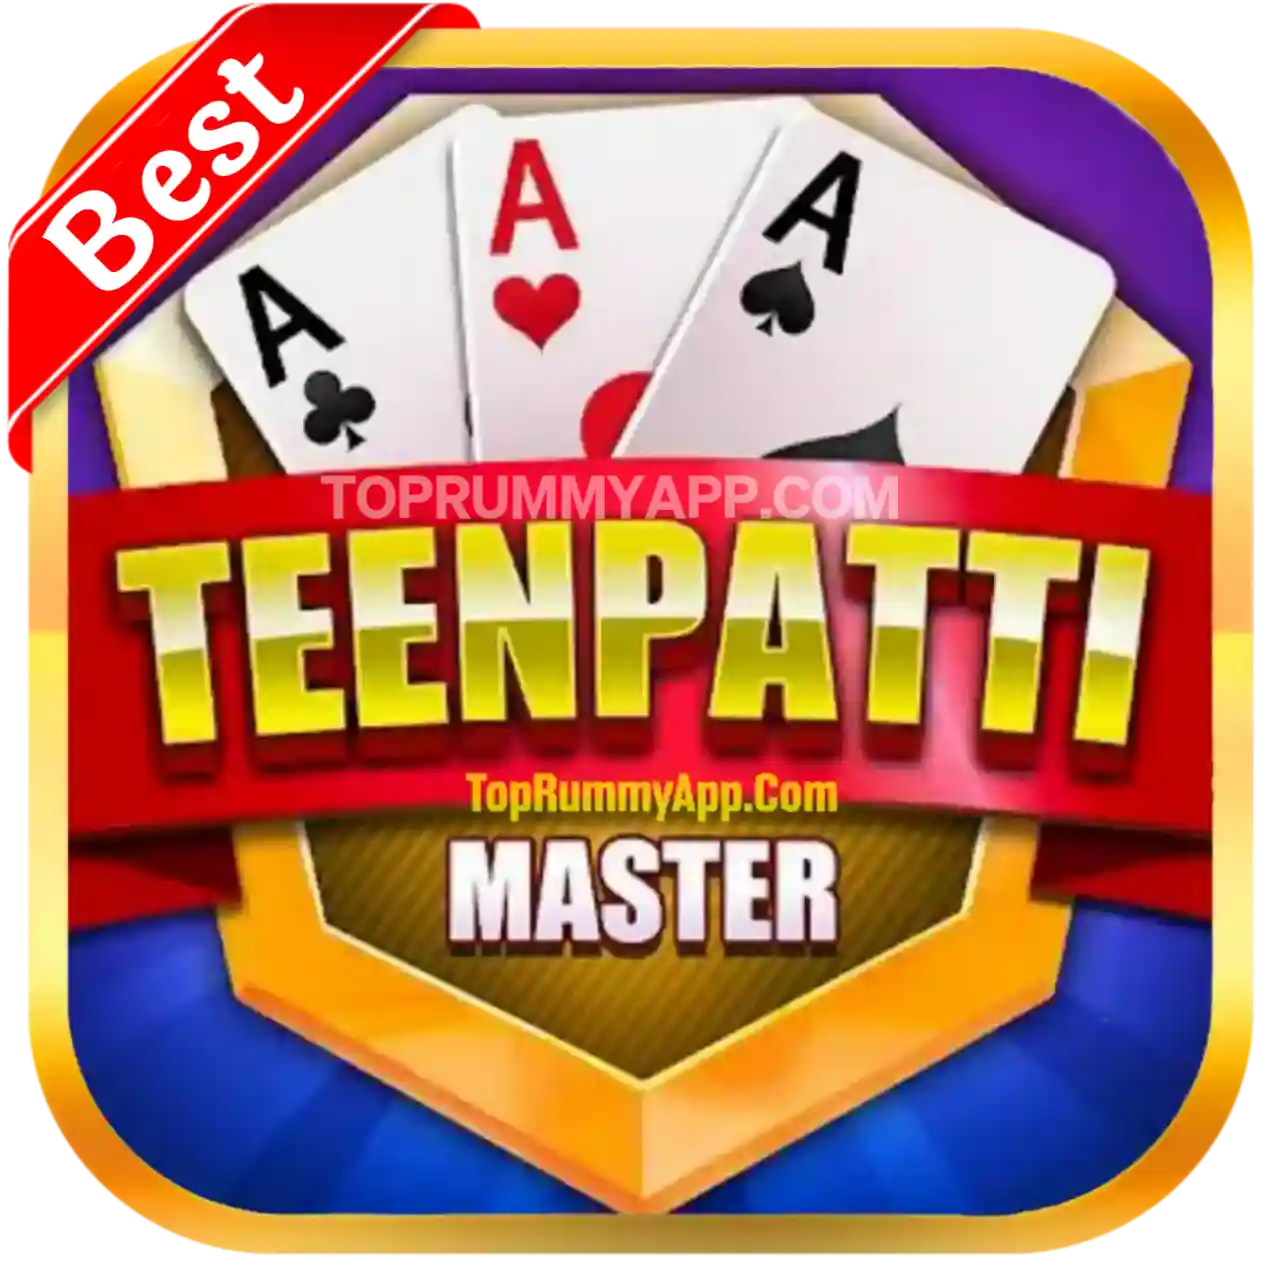 Teen Patti Master App Download - Teen Patti Sky Apk Download